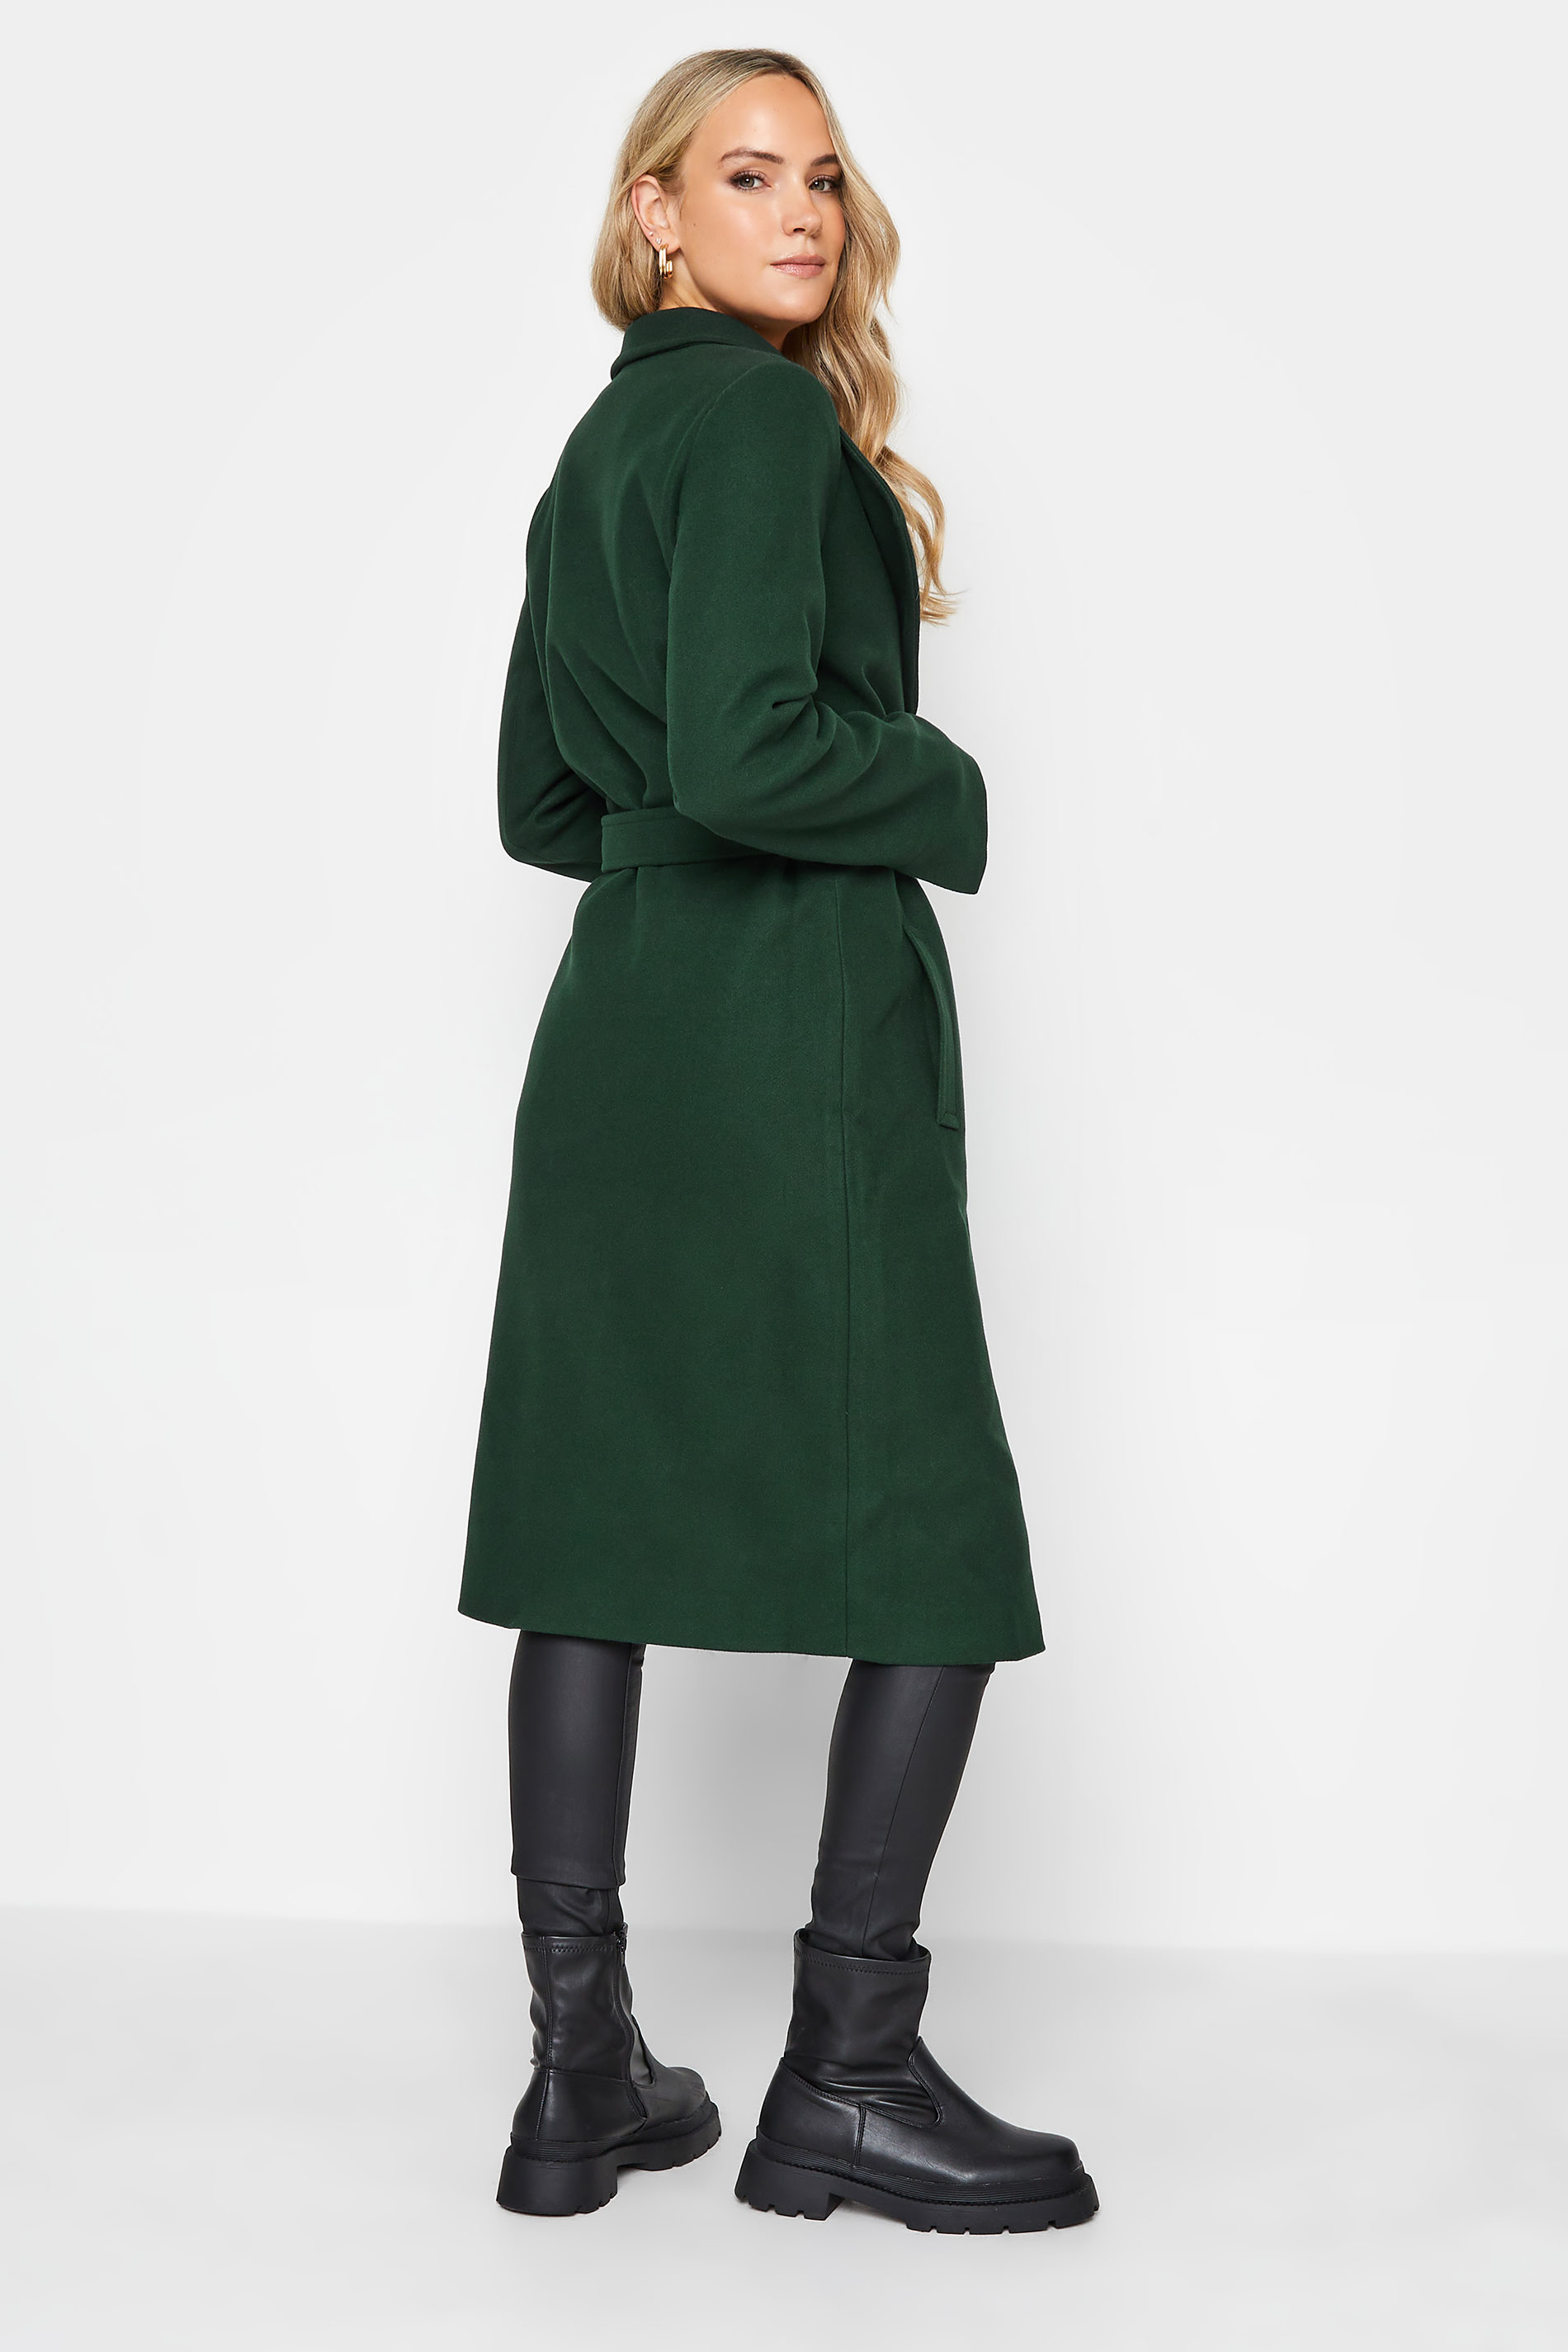 LTS Tall Women's Dark Green Belted Coat | Long Tall Sally 3